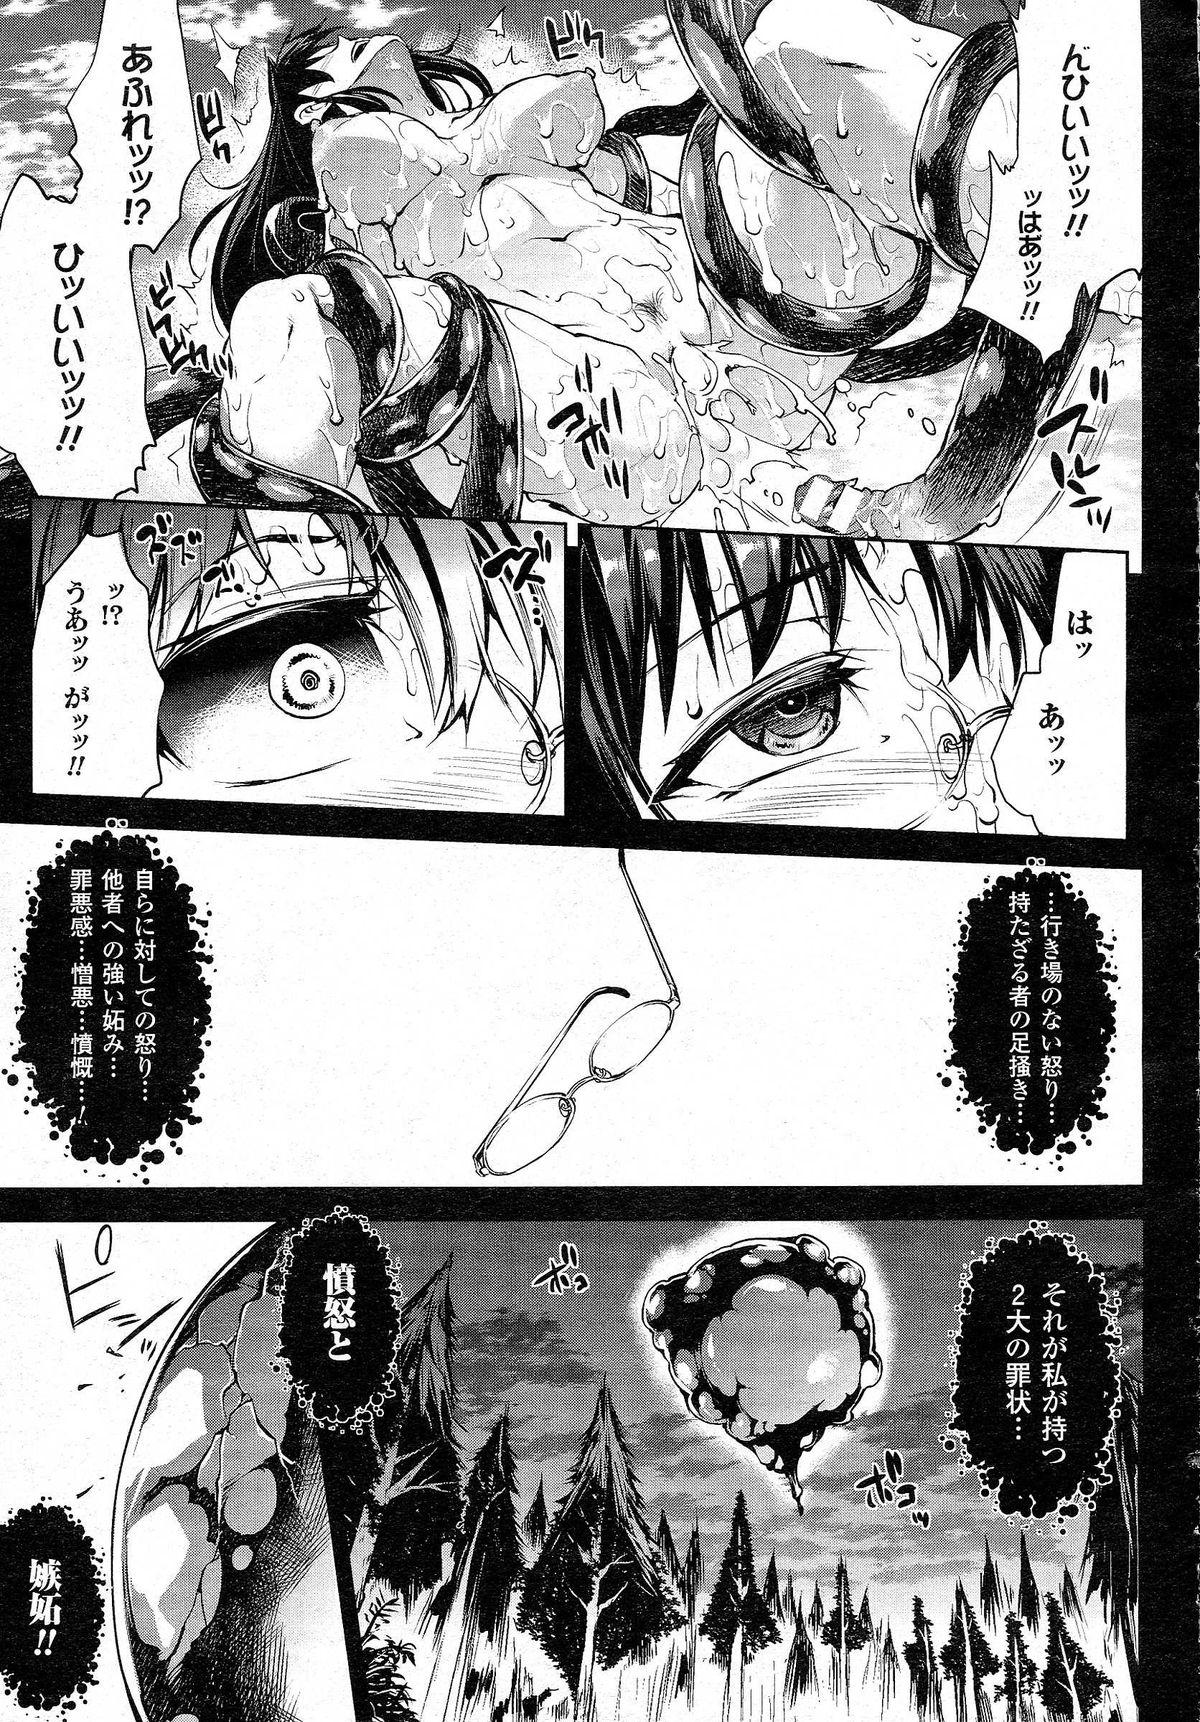 Cream [Erect Sawaru] Shinkyoku no Grimoire -PANDRA saga 2nd story- CH 13-20 Mistress - Page 11